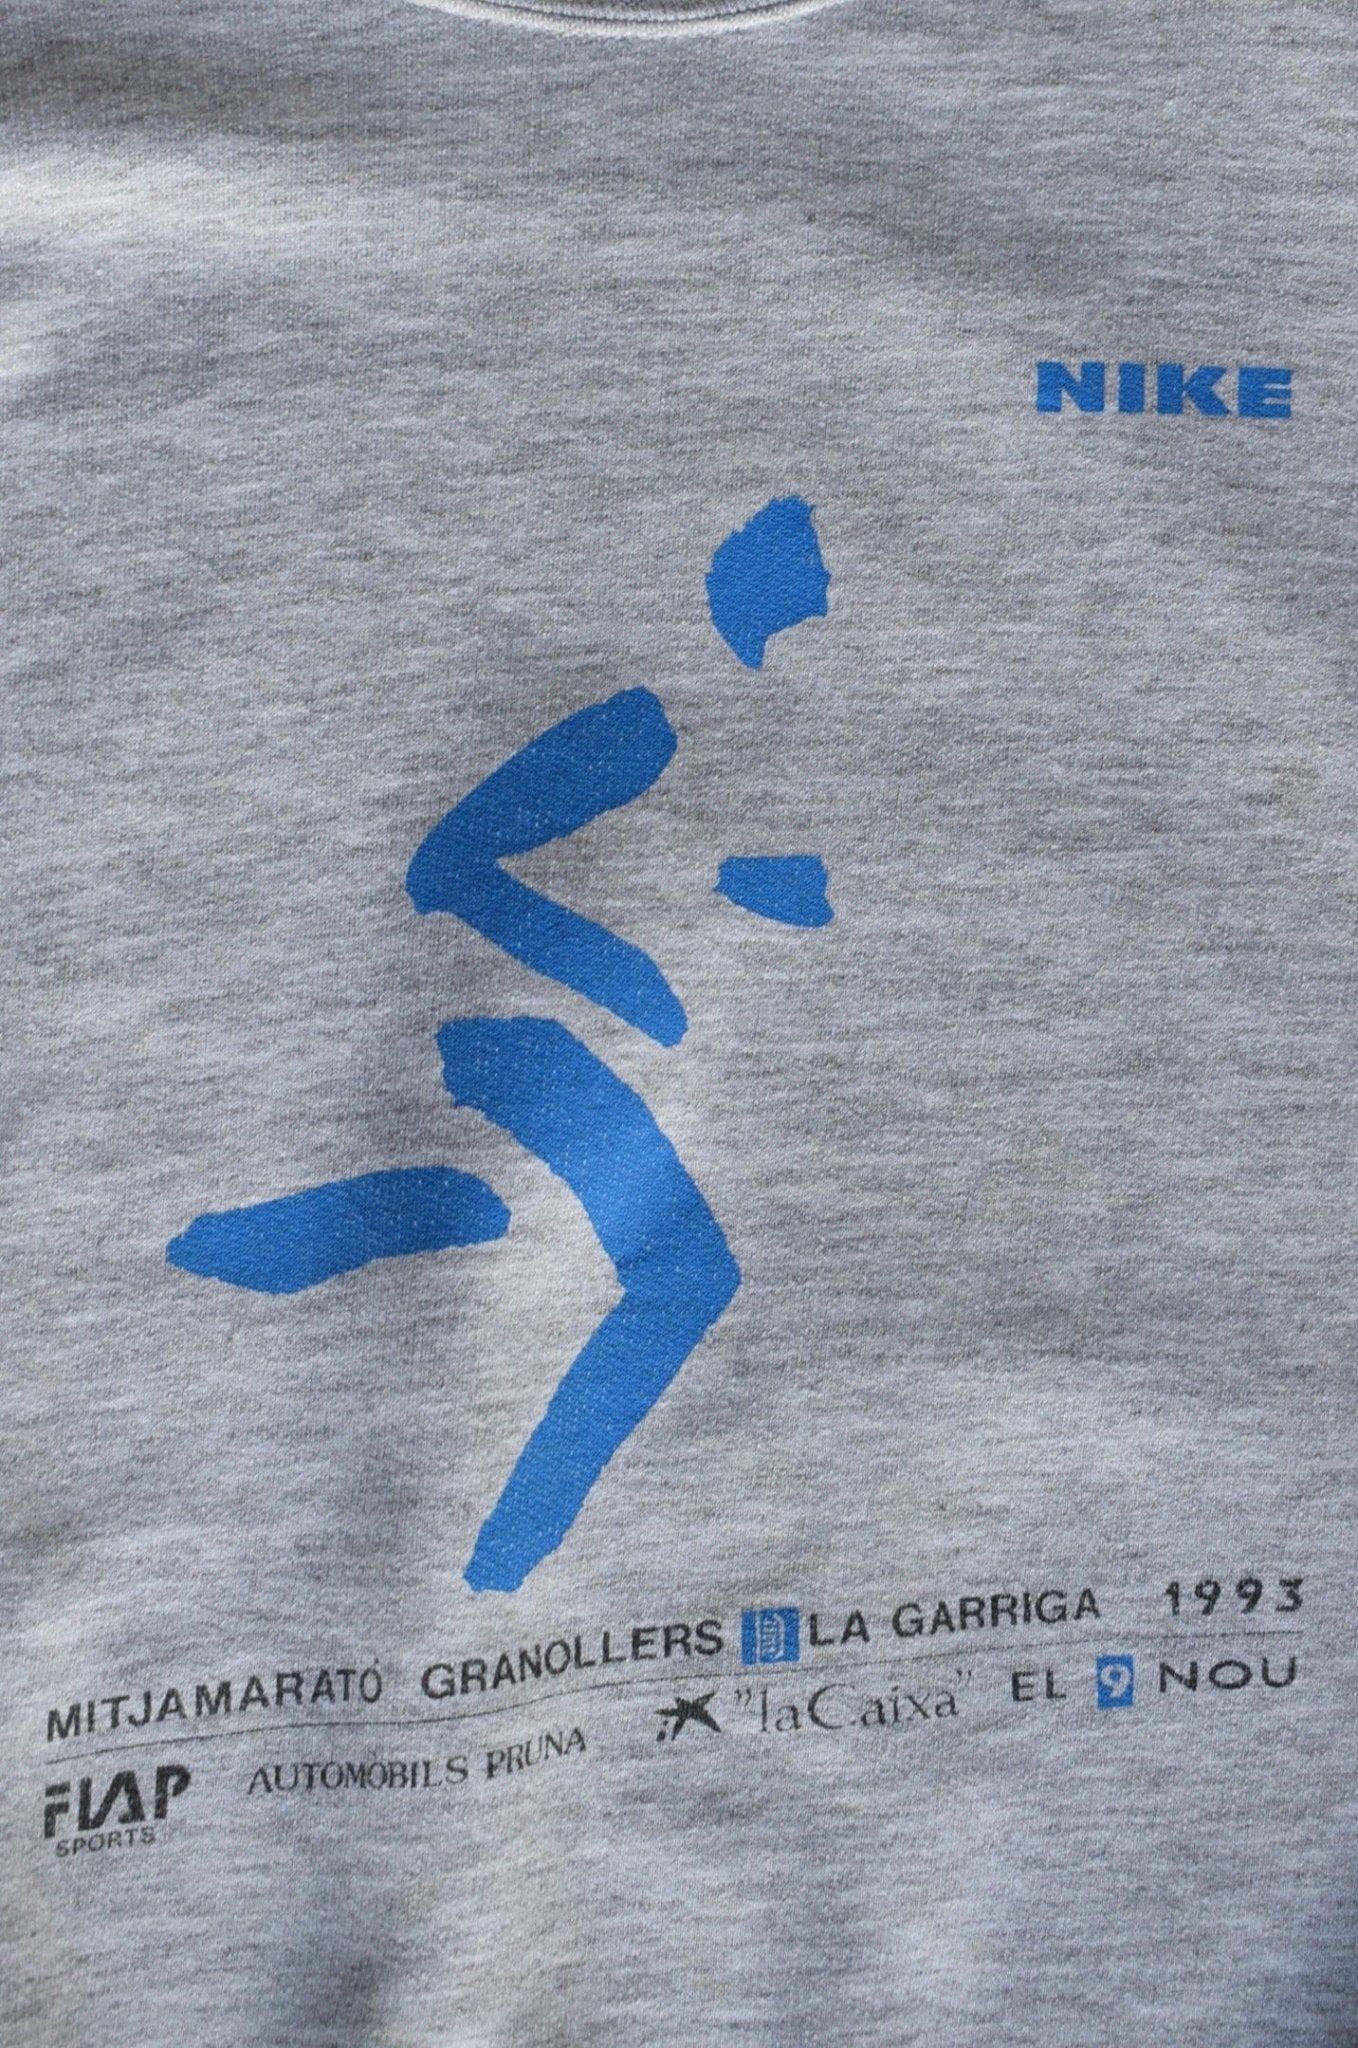 Vintage 1993 Nike Spain Marathon Crewneck (S/M) - Retrospective Store